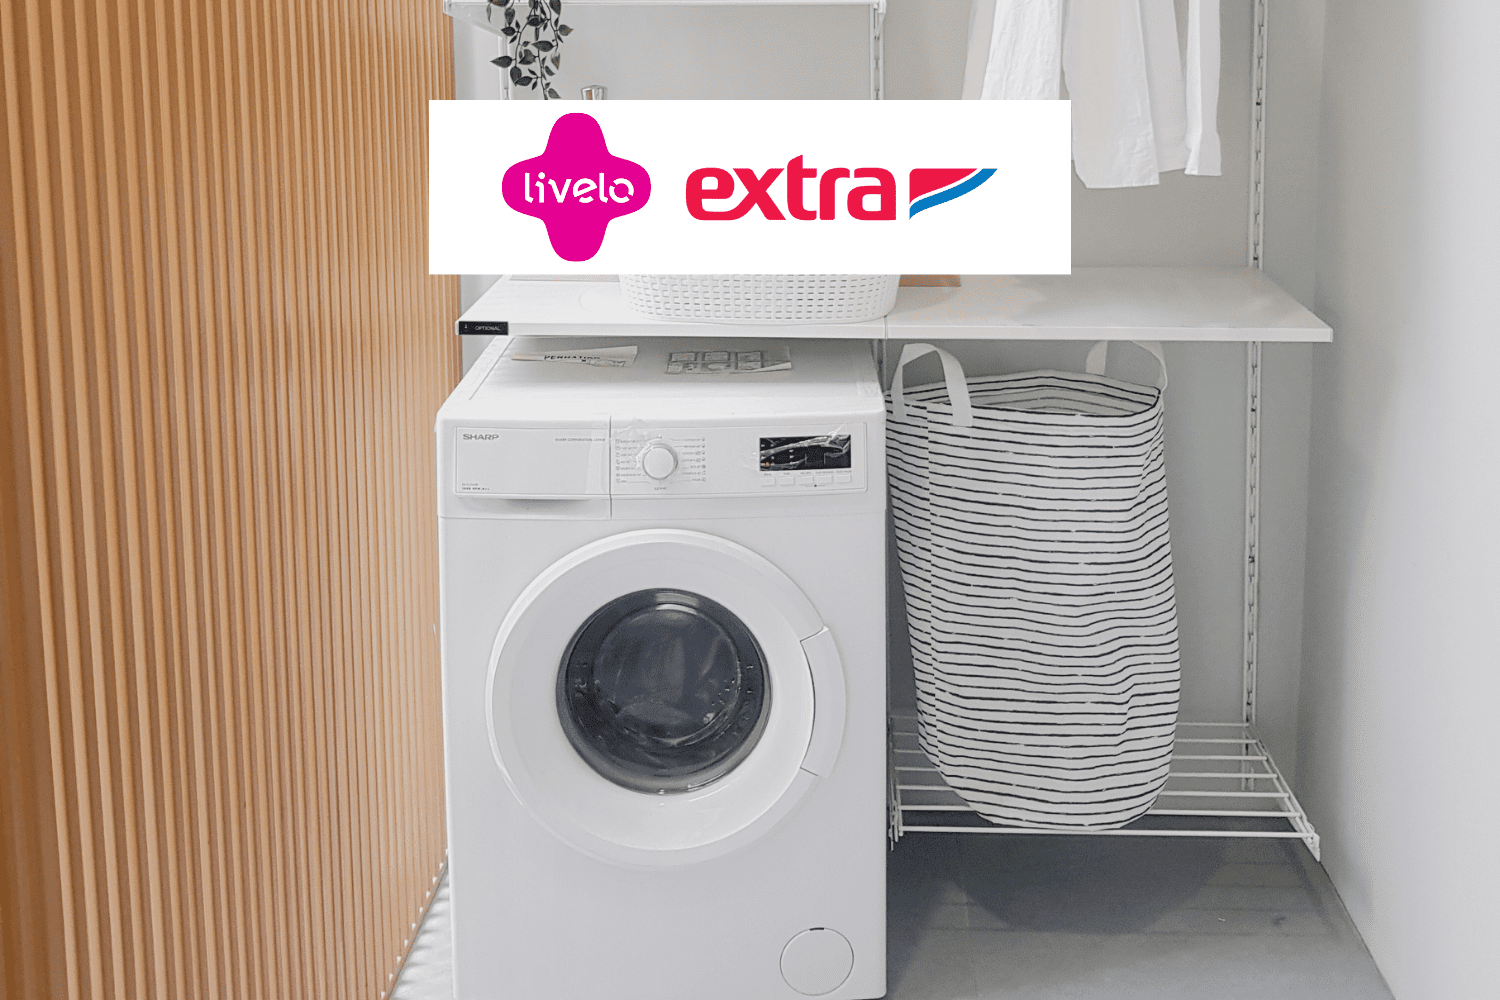 Máquina de lavar com logo Livelo e Extra 10 pontos Livelo